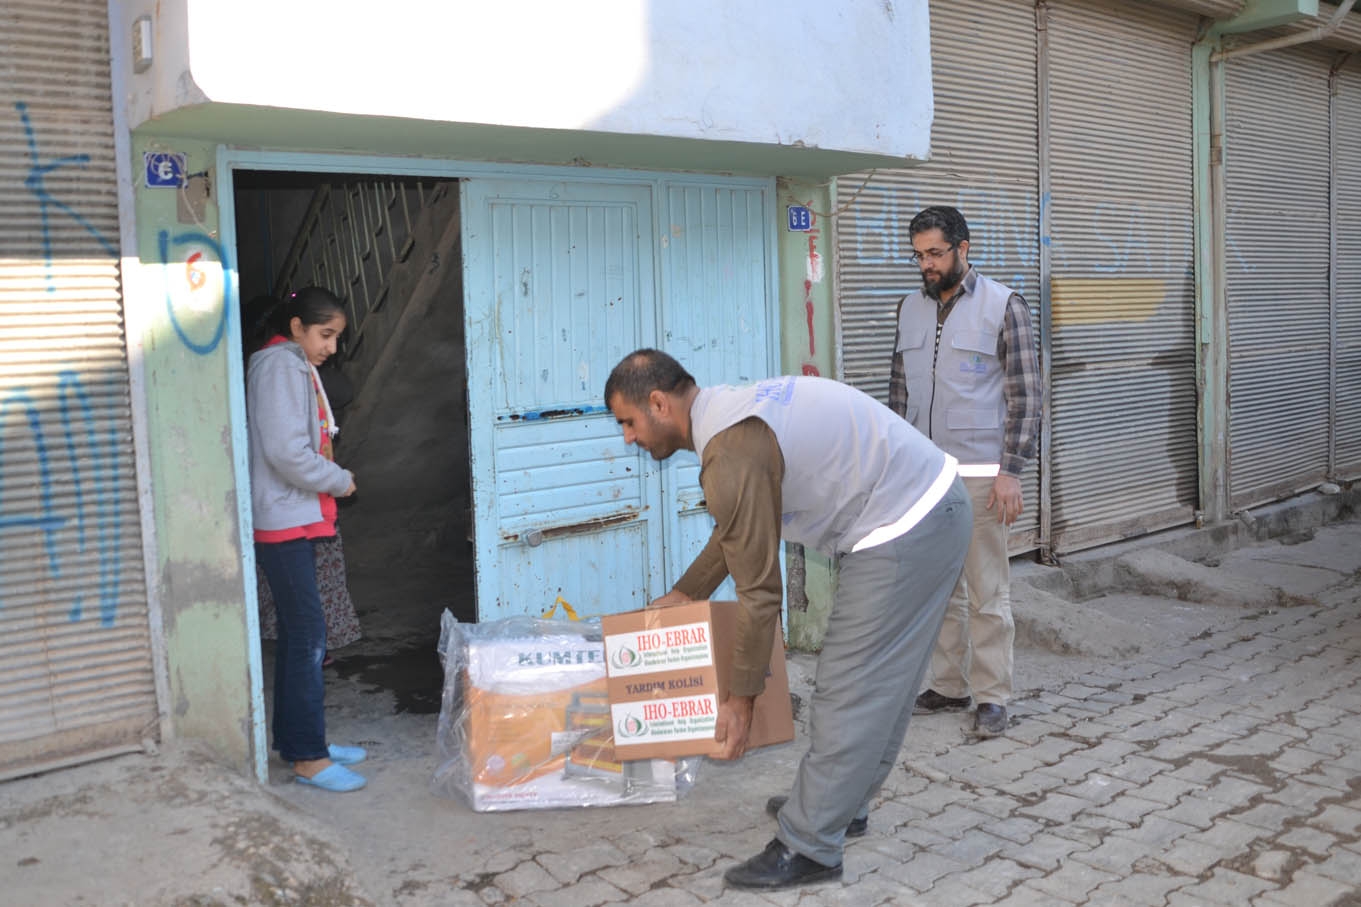 IHO EBRAR Viranşehir'de yardım dağıttı